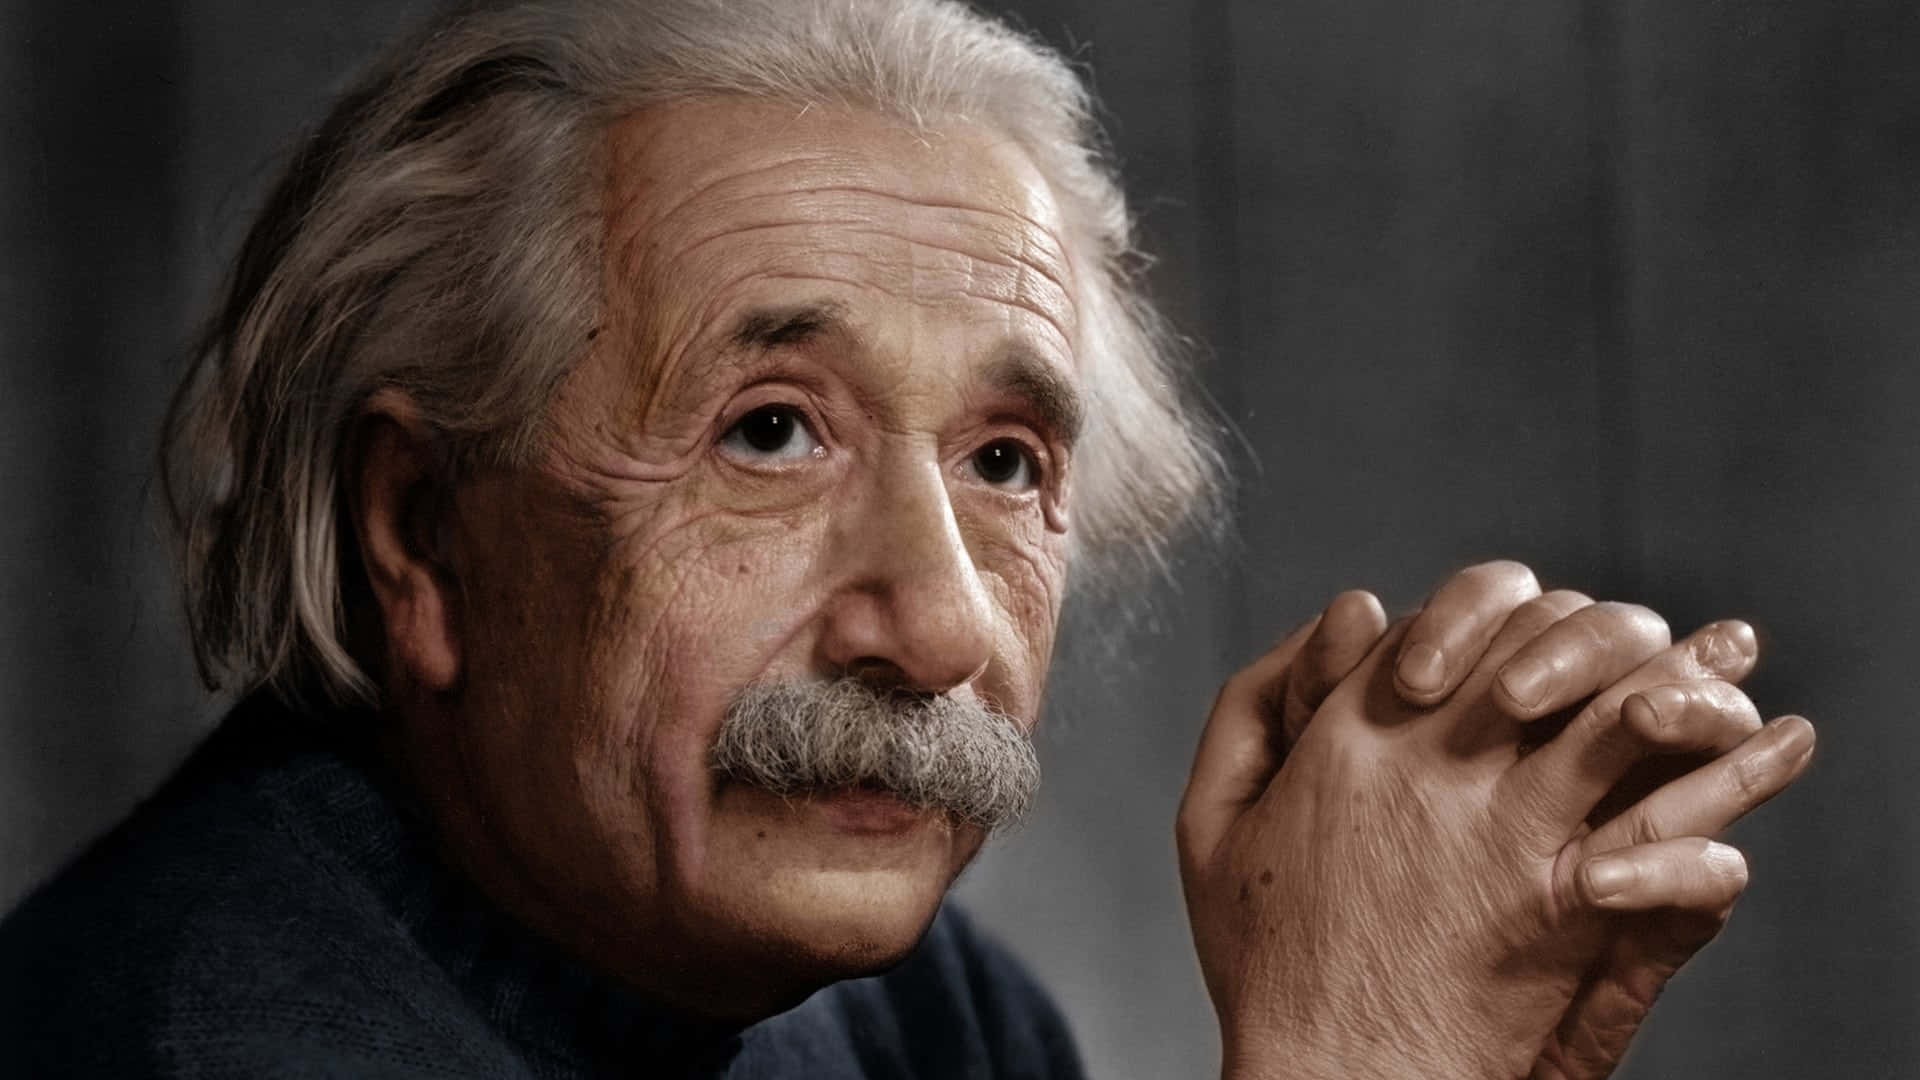 "A portrait of Albert Einstein"